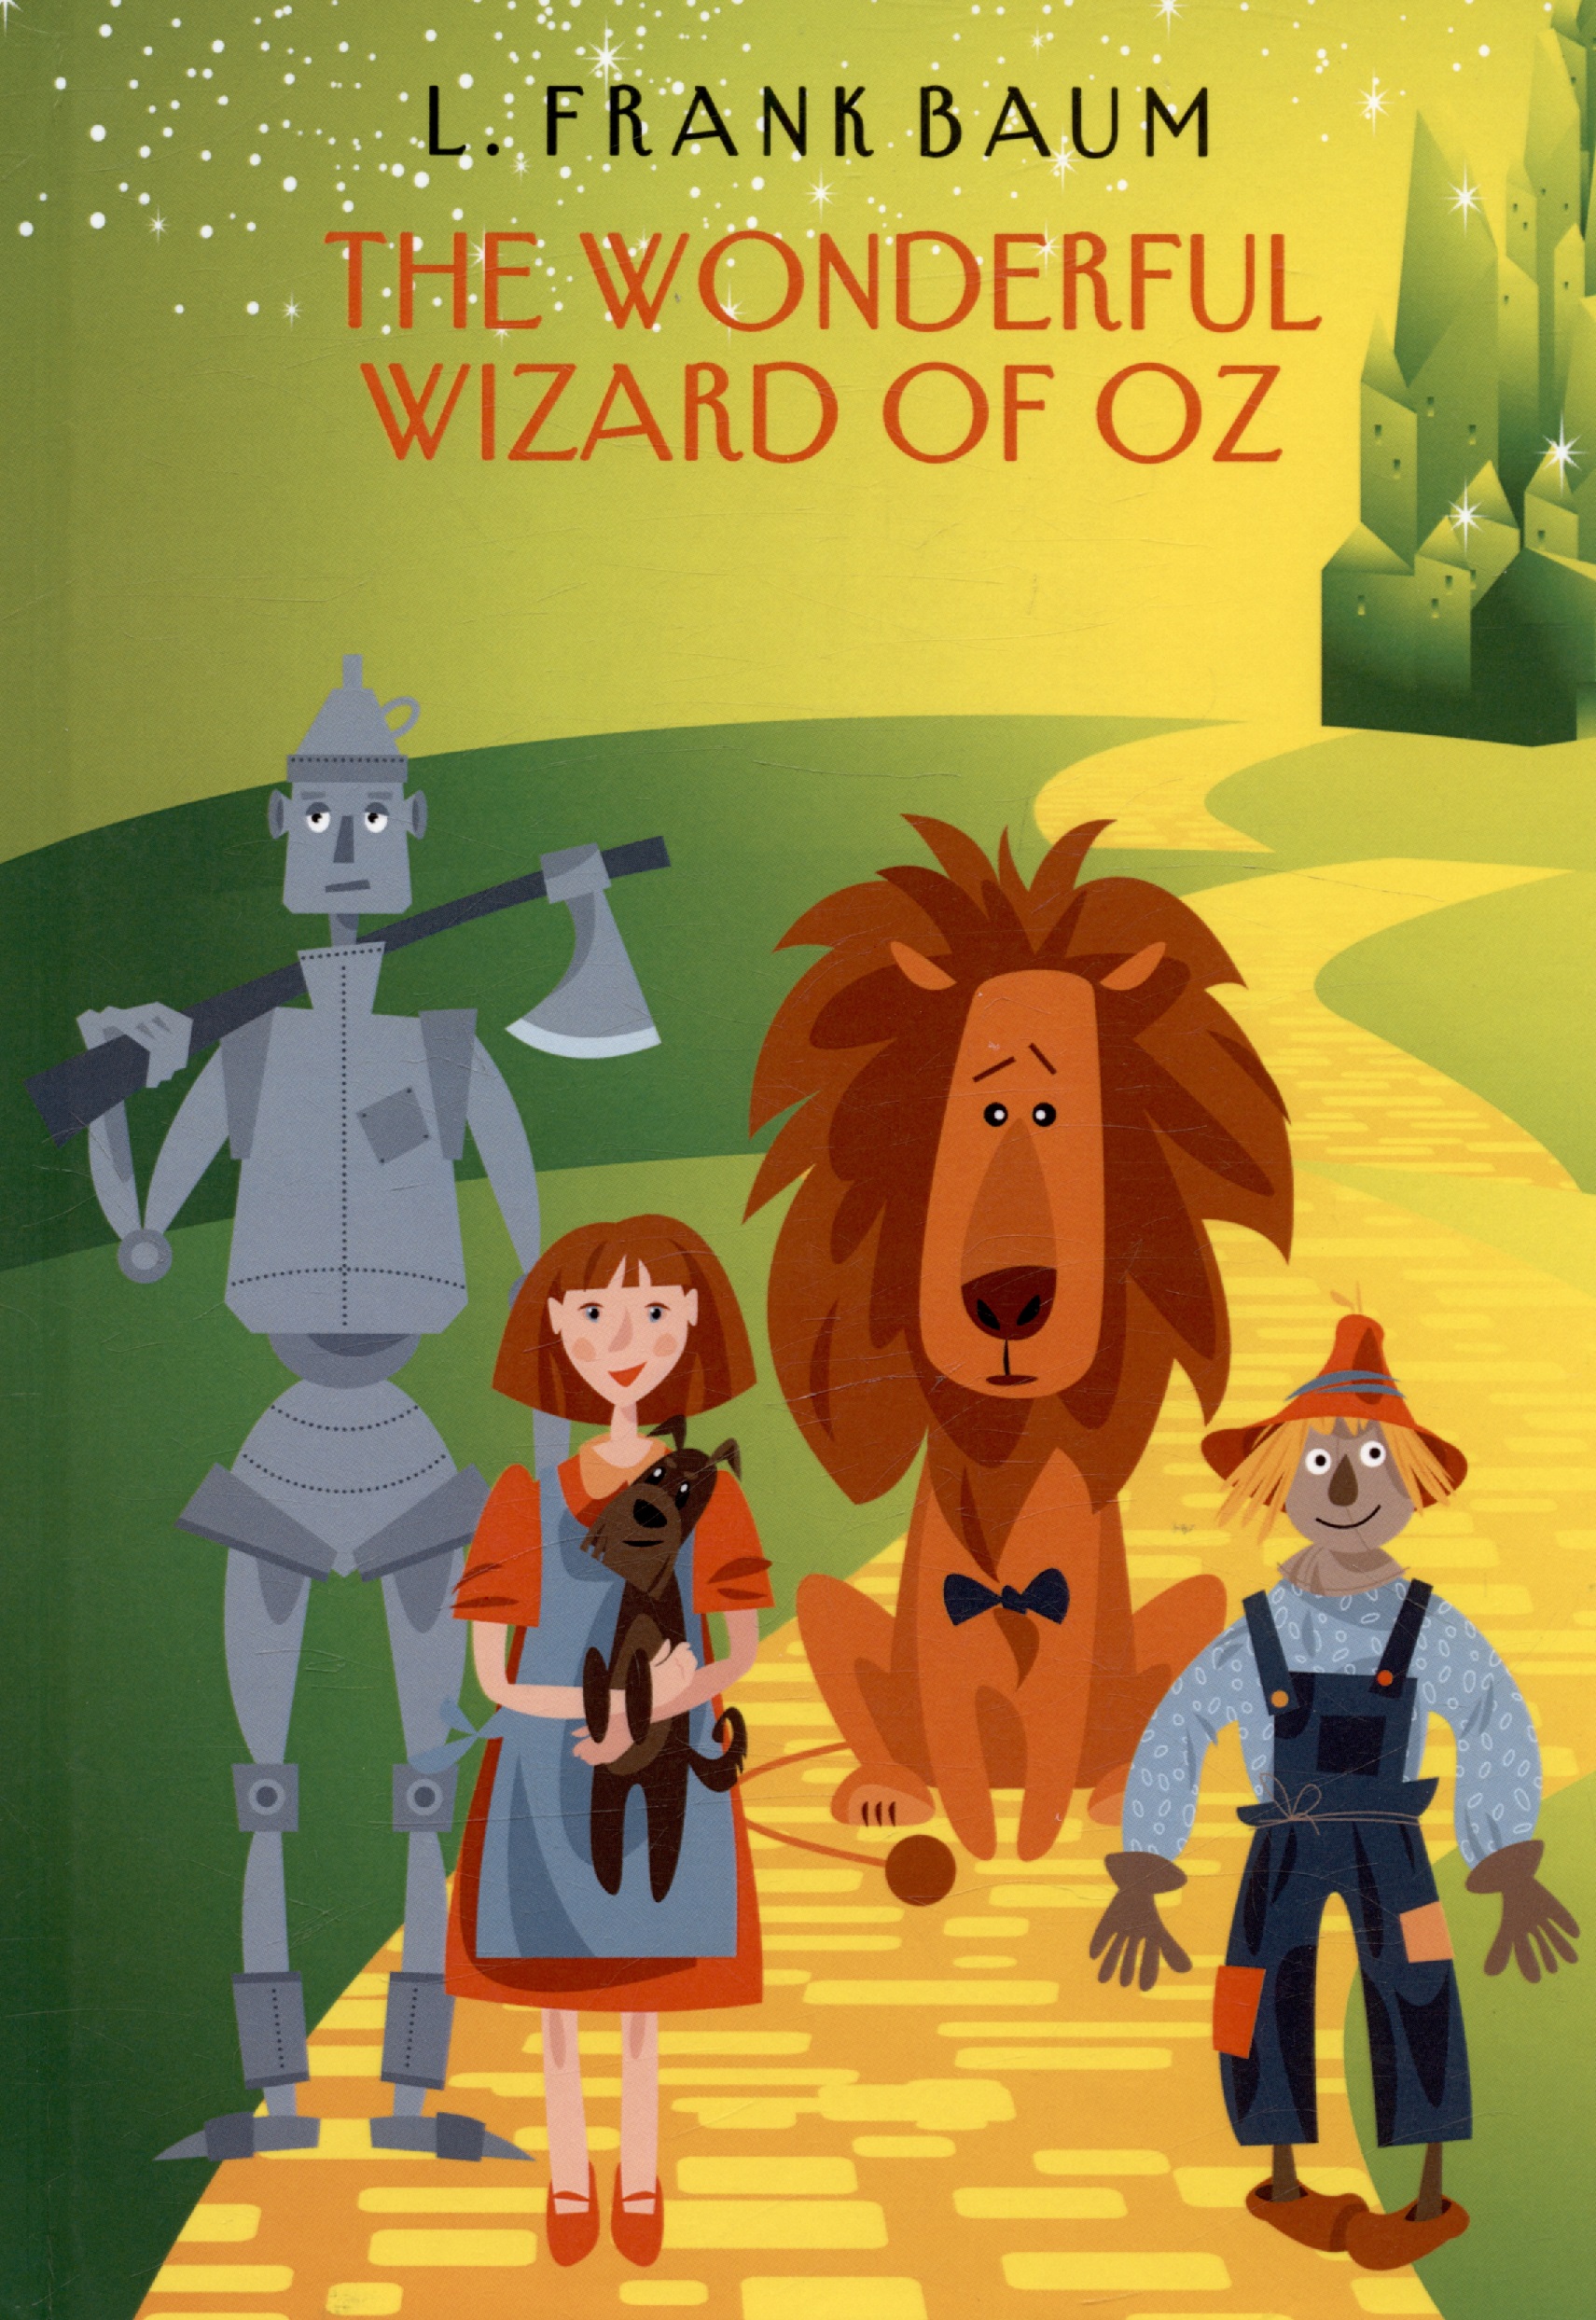 Баум Лаймен Фрэнк Лаймен The Wonderful Wizard of Oz baum lyman frank wonderful wizard of oz